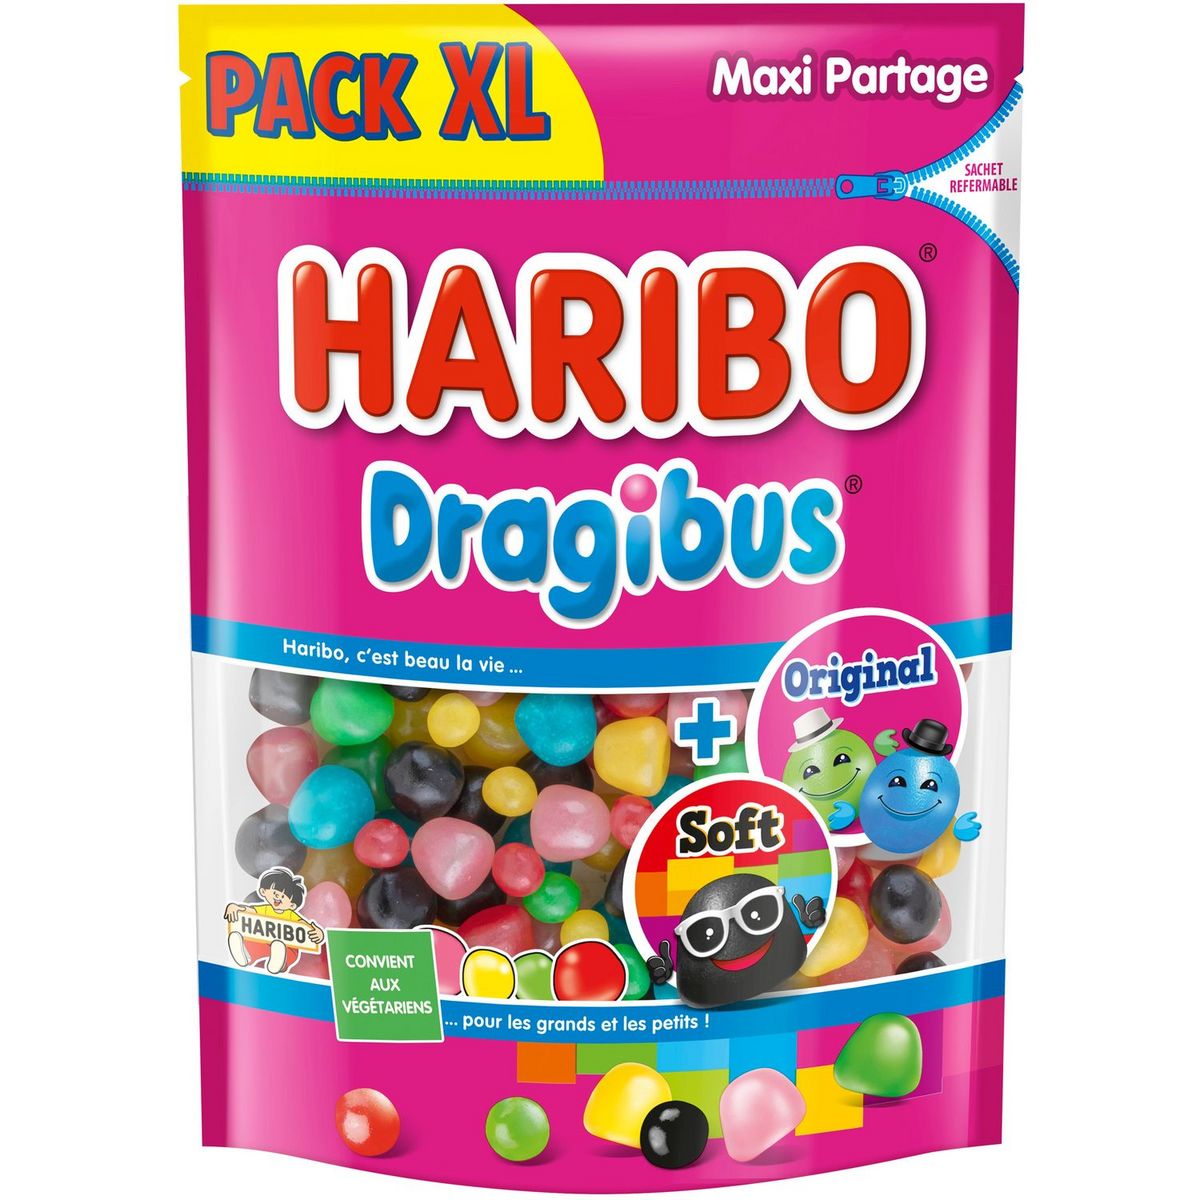 HARIBO Bonbons Dragibus original et soft 850g